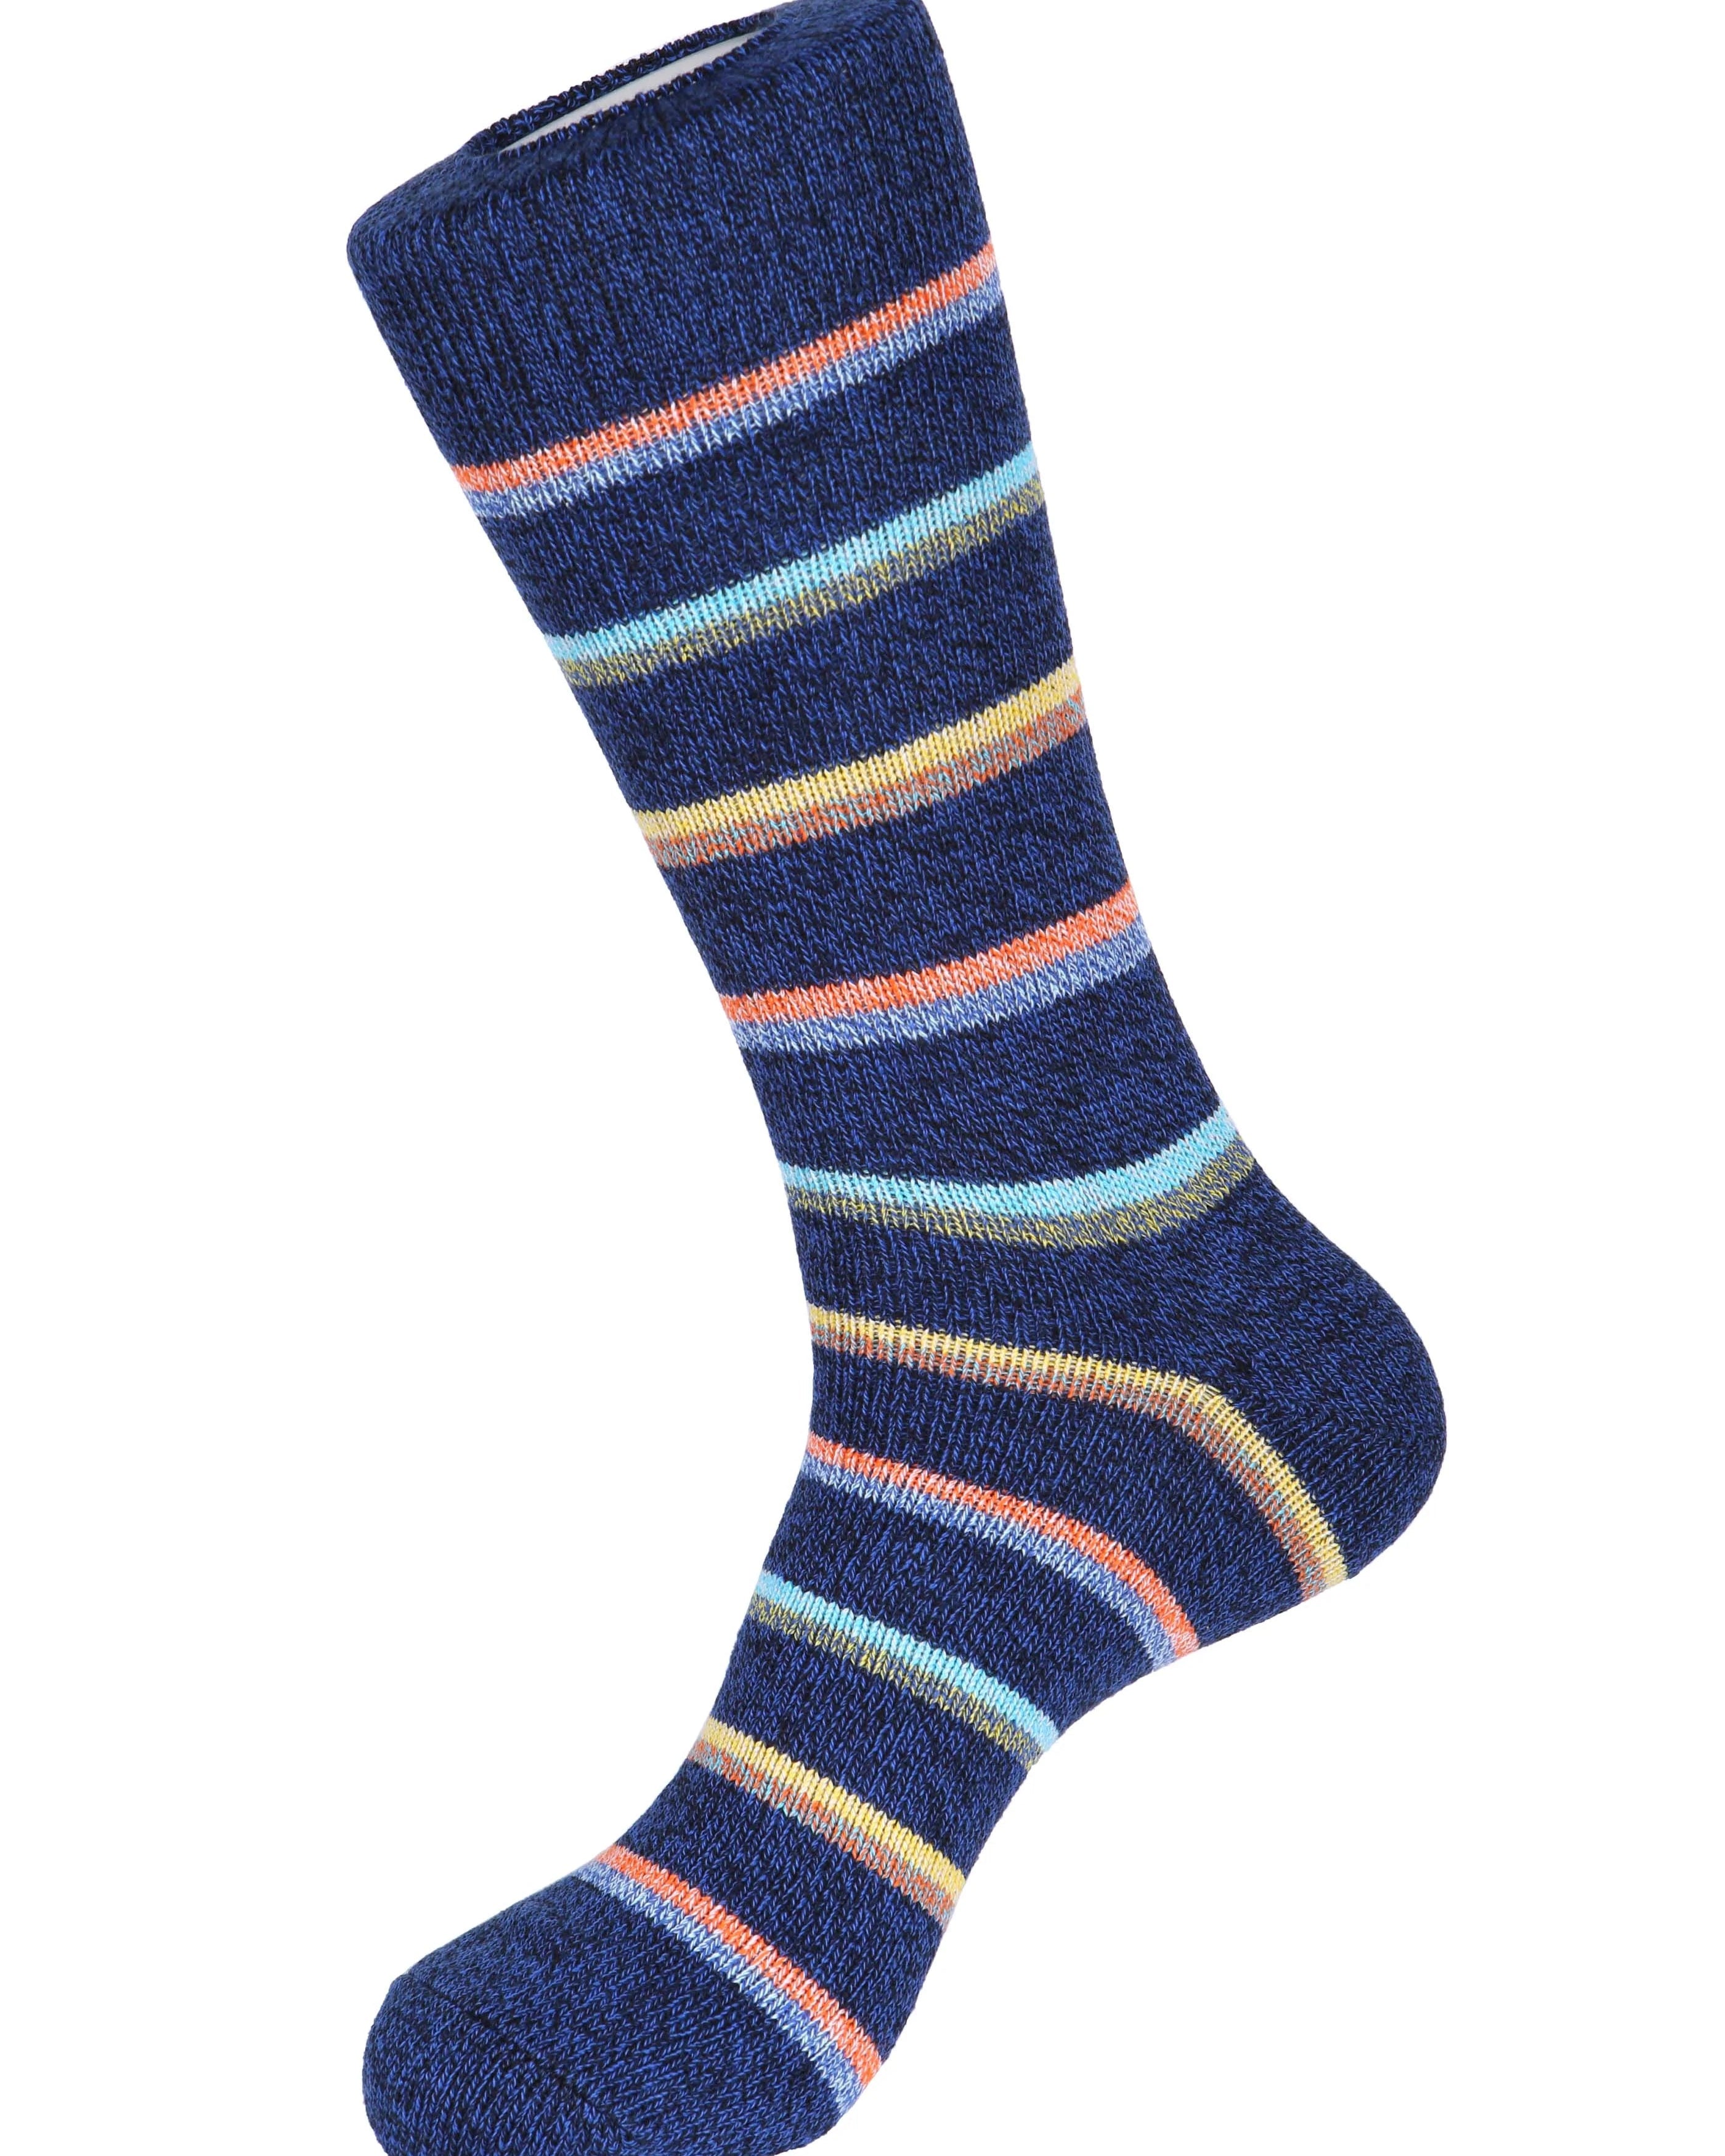 Sailor Stripe Boot Socks - Men's Socks at Menzclub